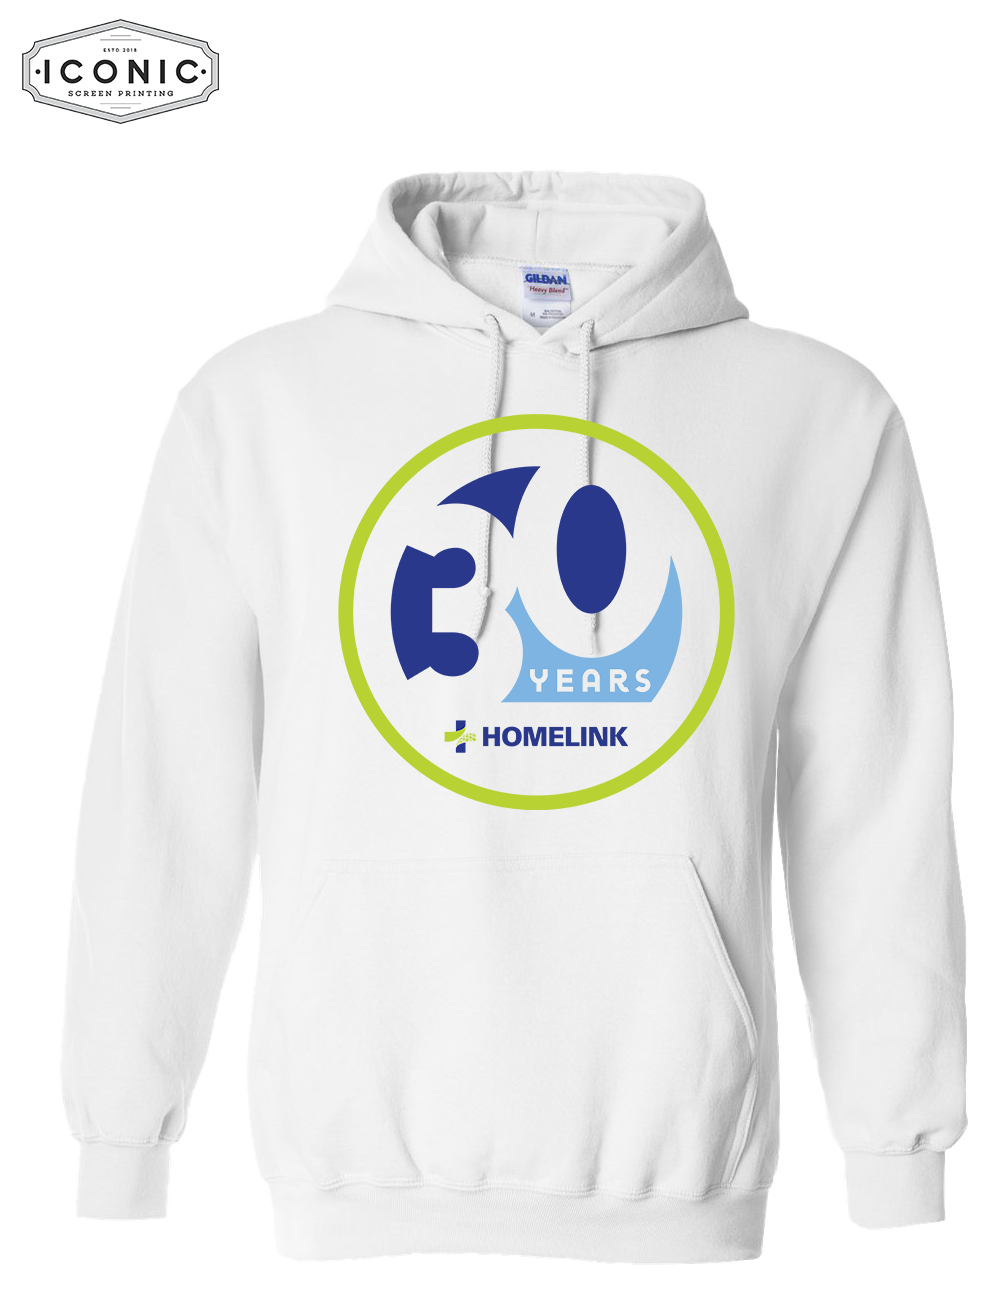 HOMELINK 30years - Heavy Blend Hooded Sweatshirt